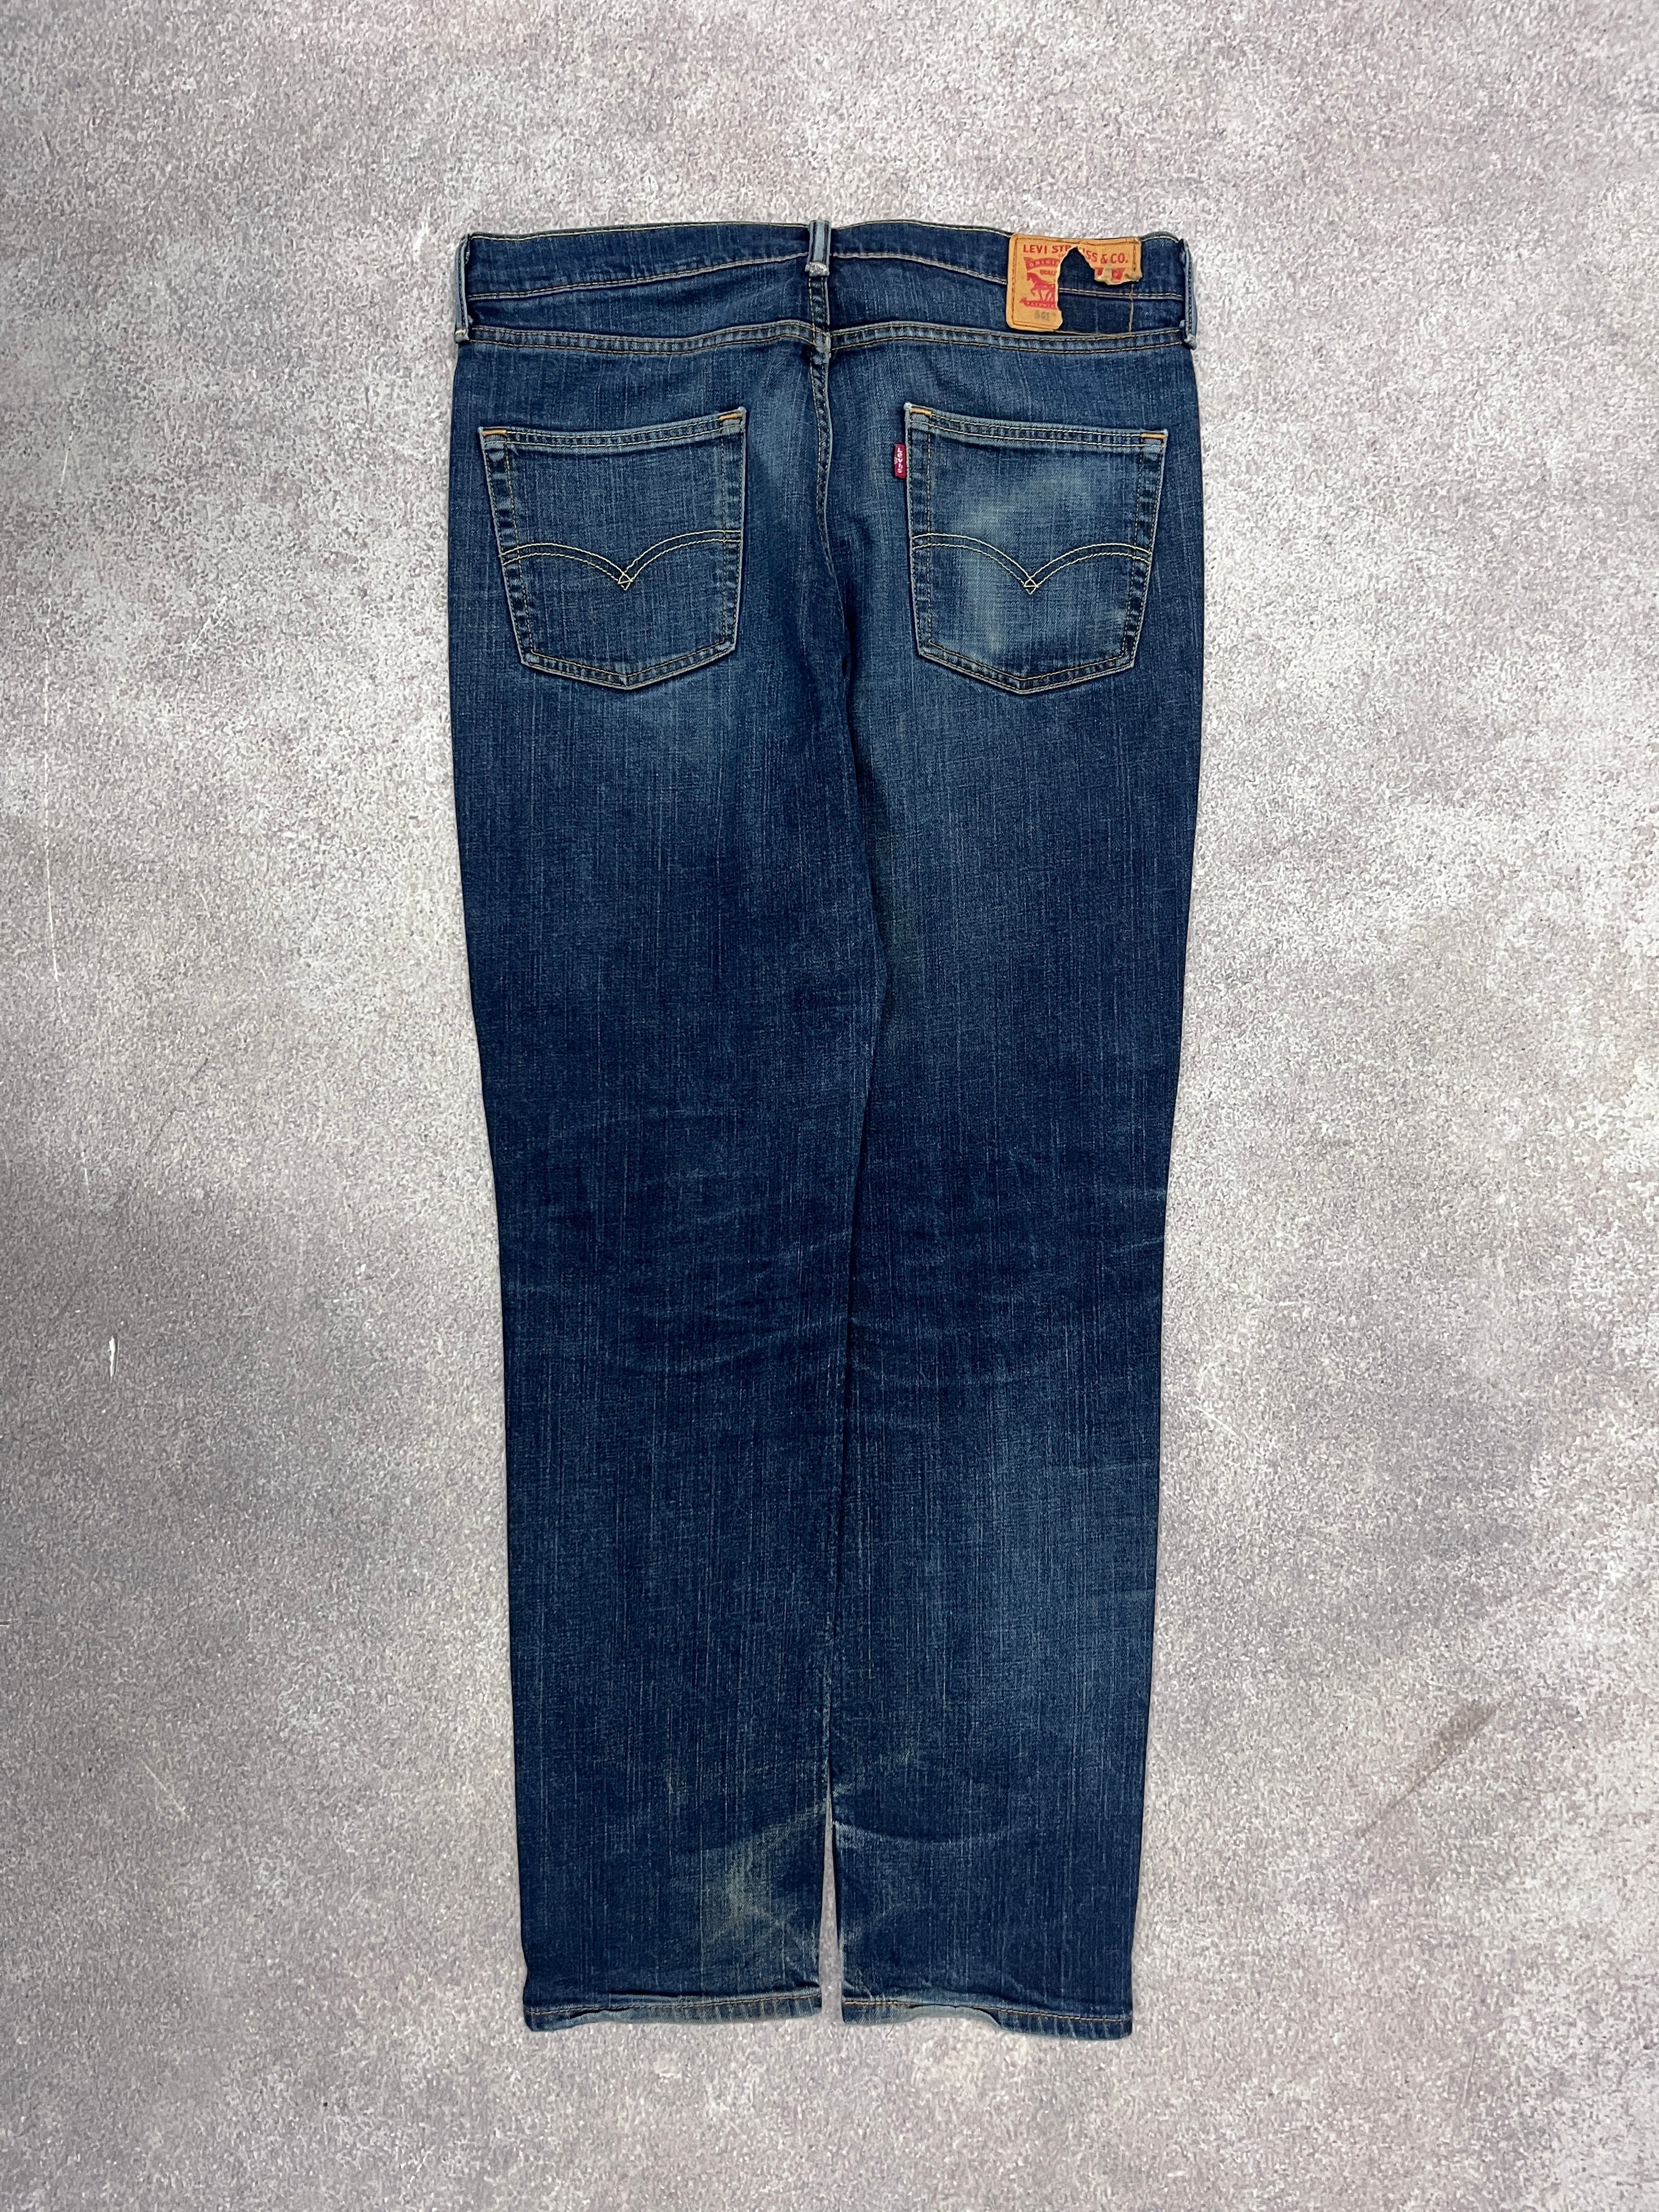 Vintage Levi 541 Denim Jeans Blue // W00 L00 - RHAGHOUSE VINTAGE